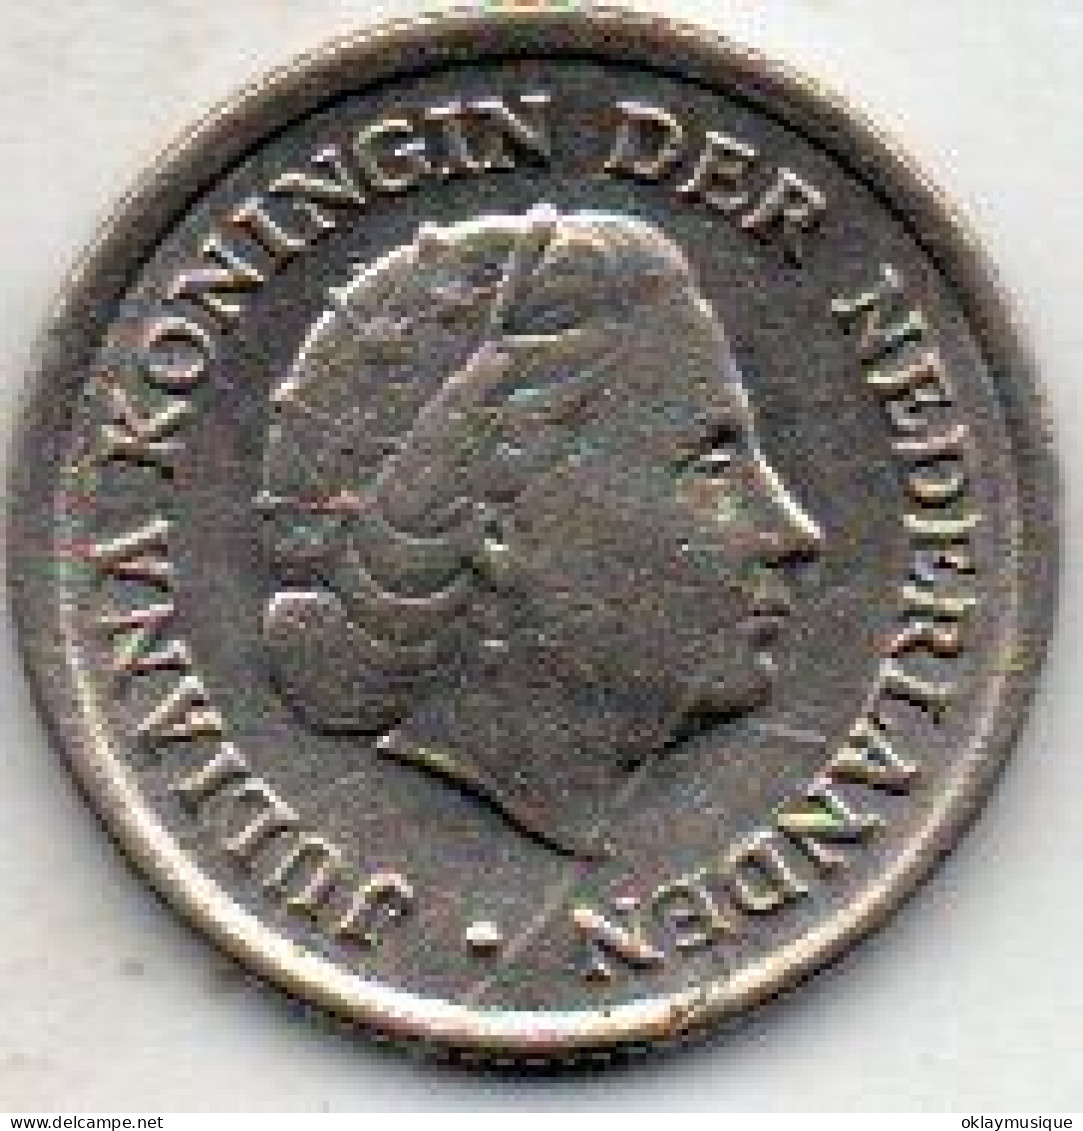 10 Cents 1974 - 1948-1980 : Juliana